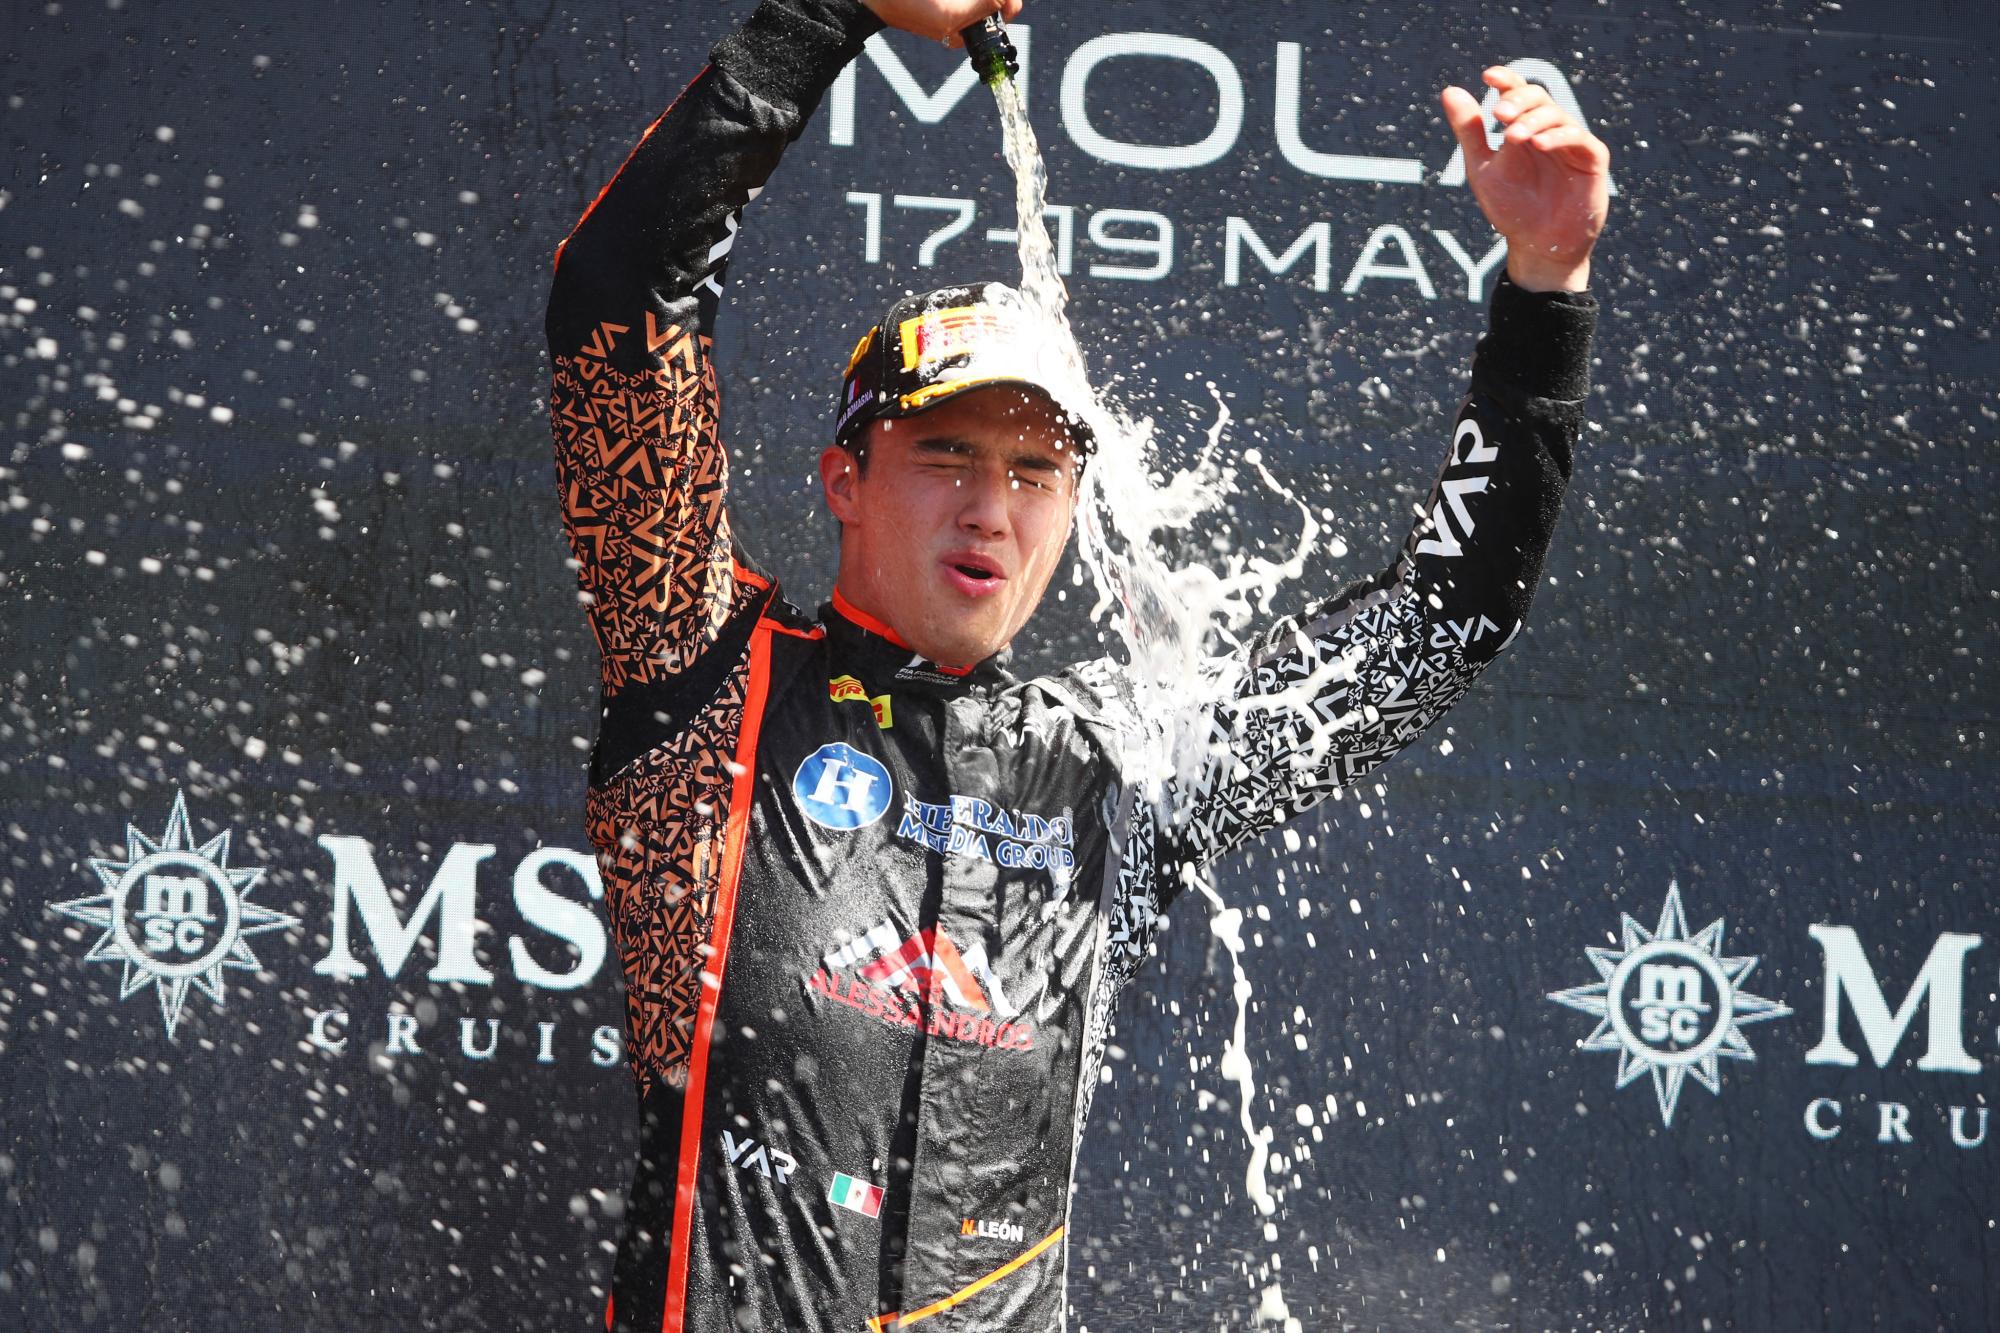 El mexicano Noel León, había sido inicialmente declarado ganador de la carrera sprint de la FIA Fórmula 3 en el Gran Premio de Emilia Romagna, pero su triunfo fue puesto en duda tras un final caót